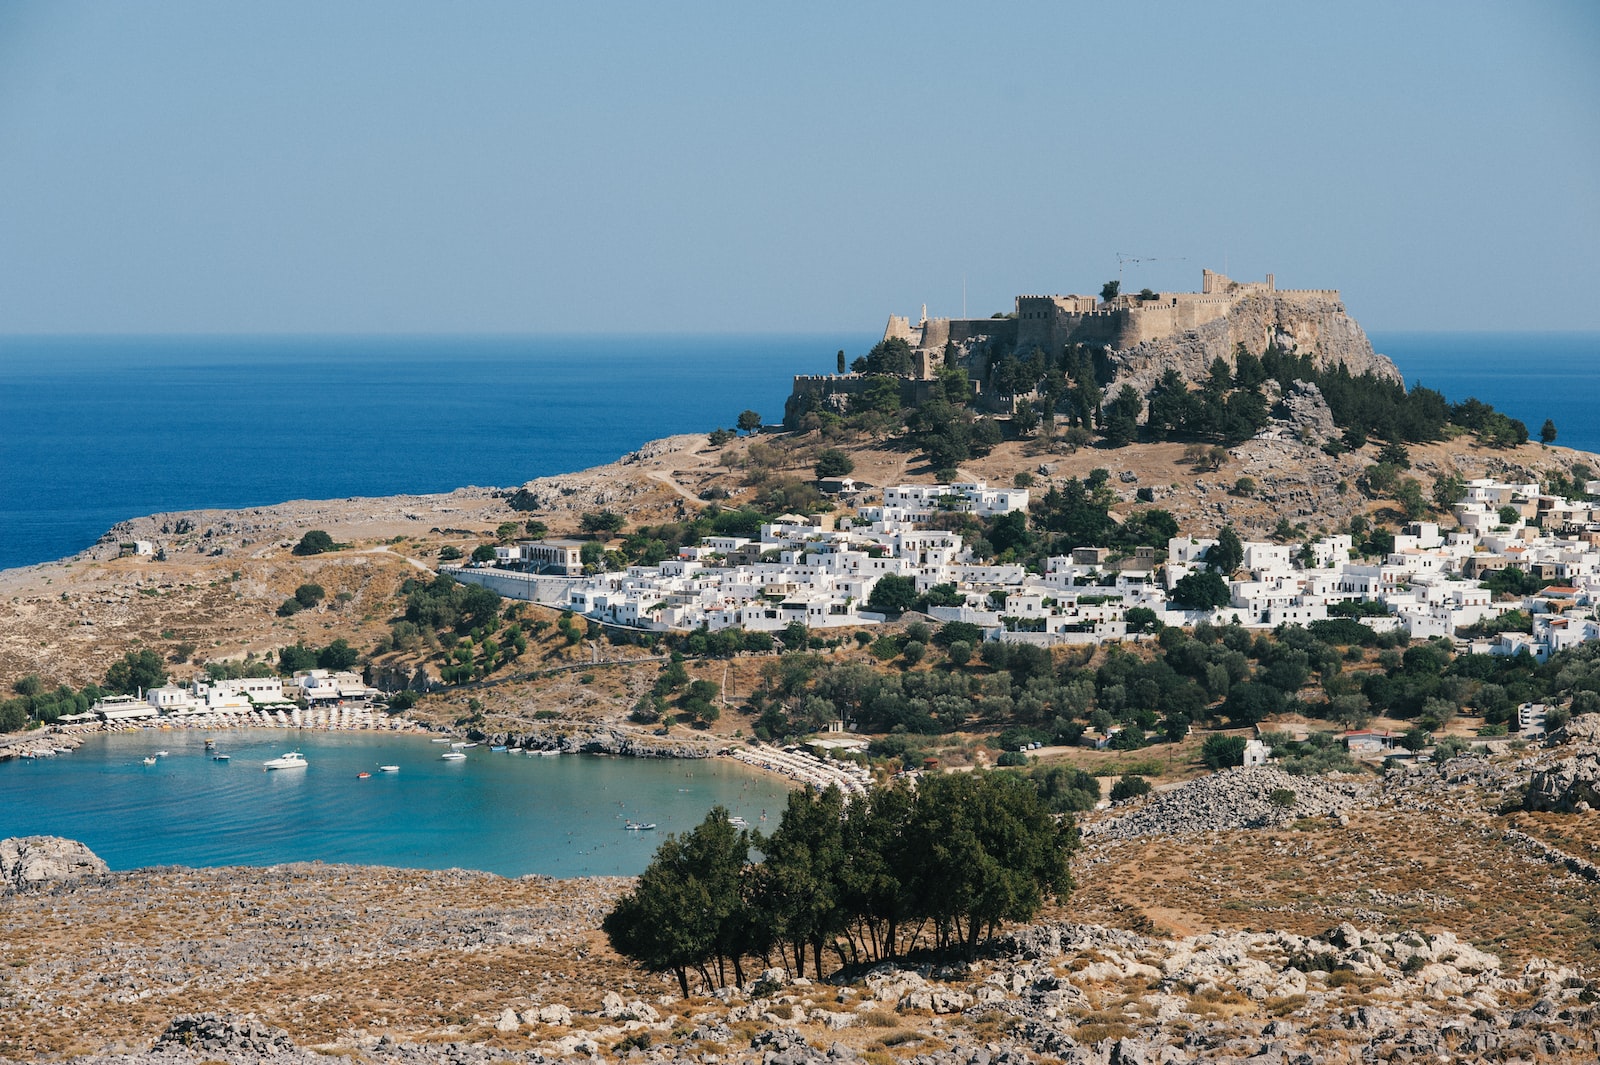 Wakacje w Grecji, Wakacje Rodos, Wakacje Kreta, Wakacje Kreta, Którą wyspę grecką wybrać na wakacje?